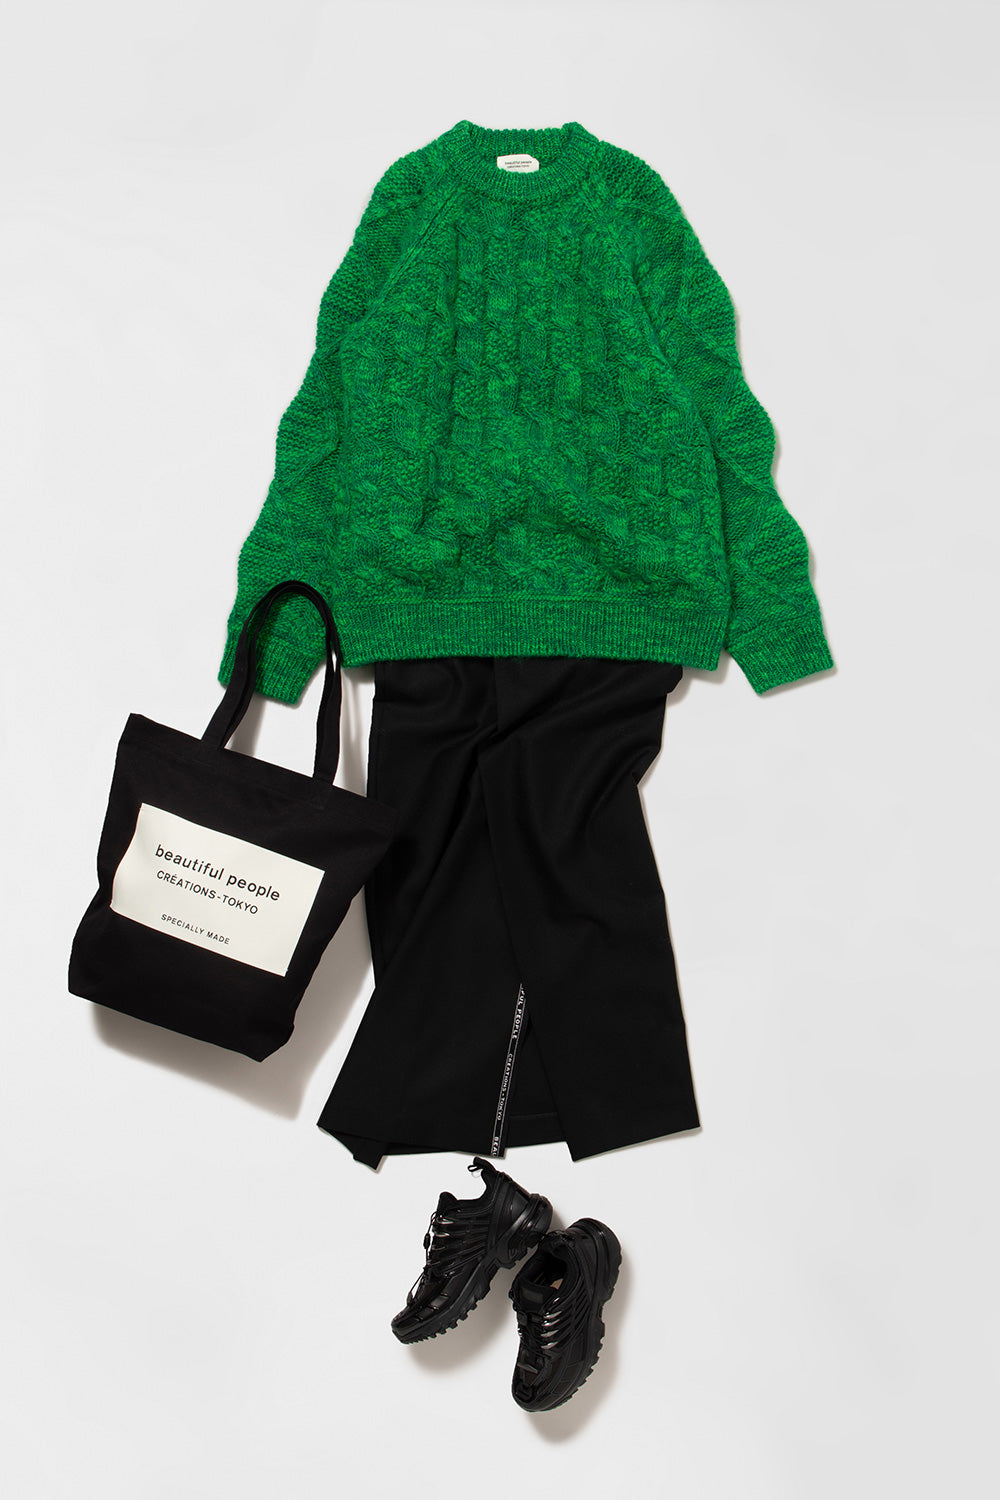 ビューティフルピープルの緑のニットに黒いスカートとバッグを合わせたスタイリング